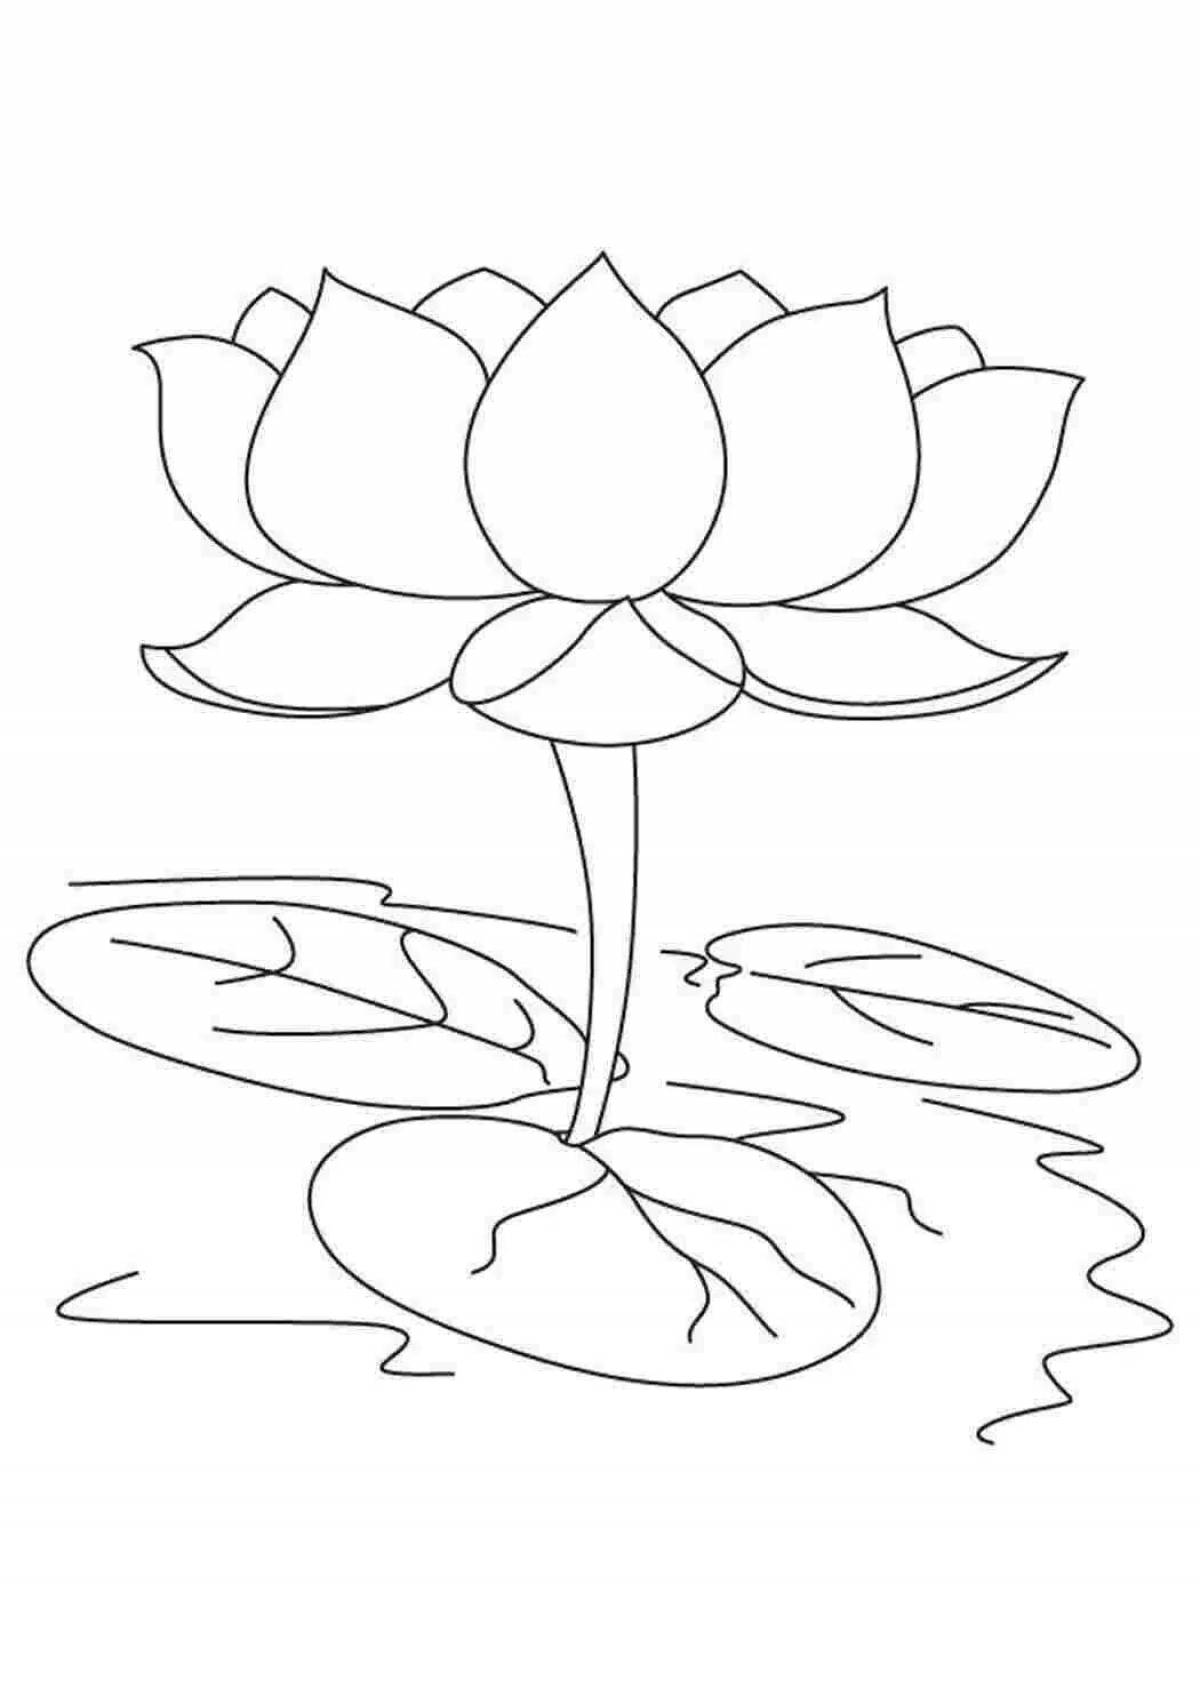 Шаблон Цветка Лотоса